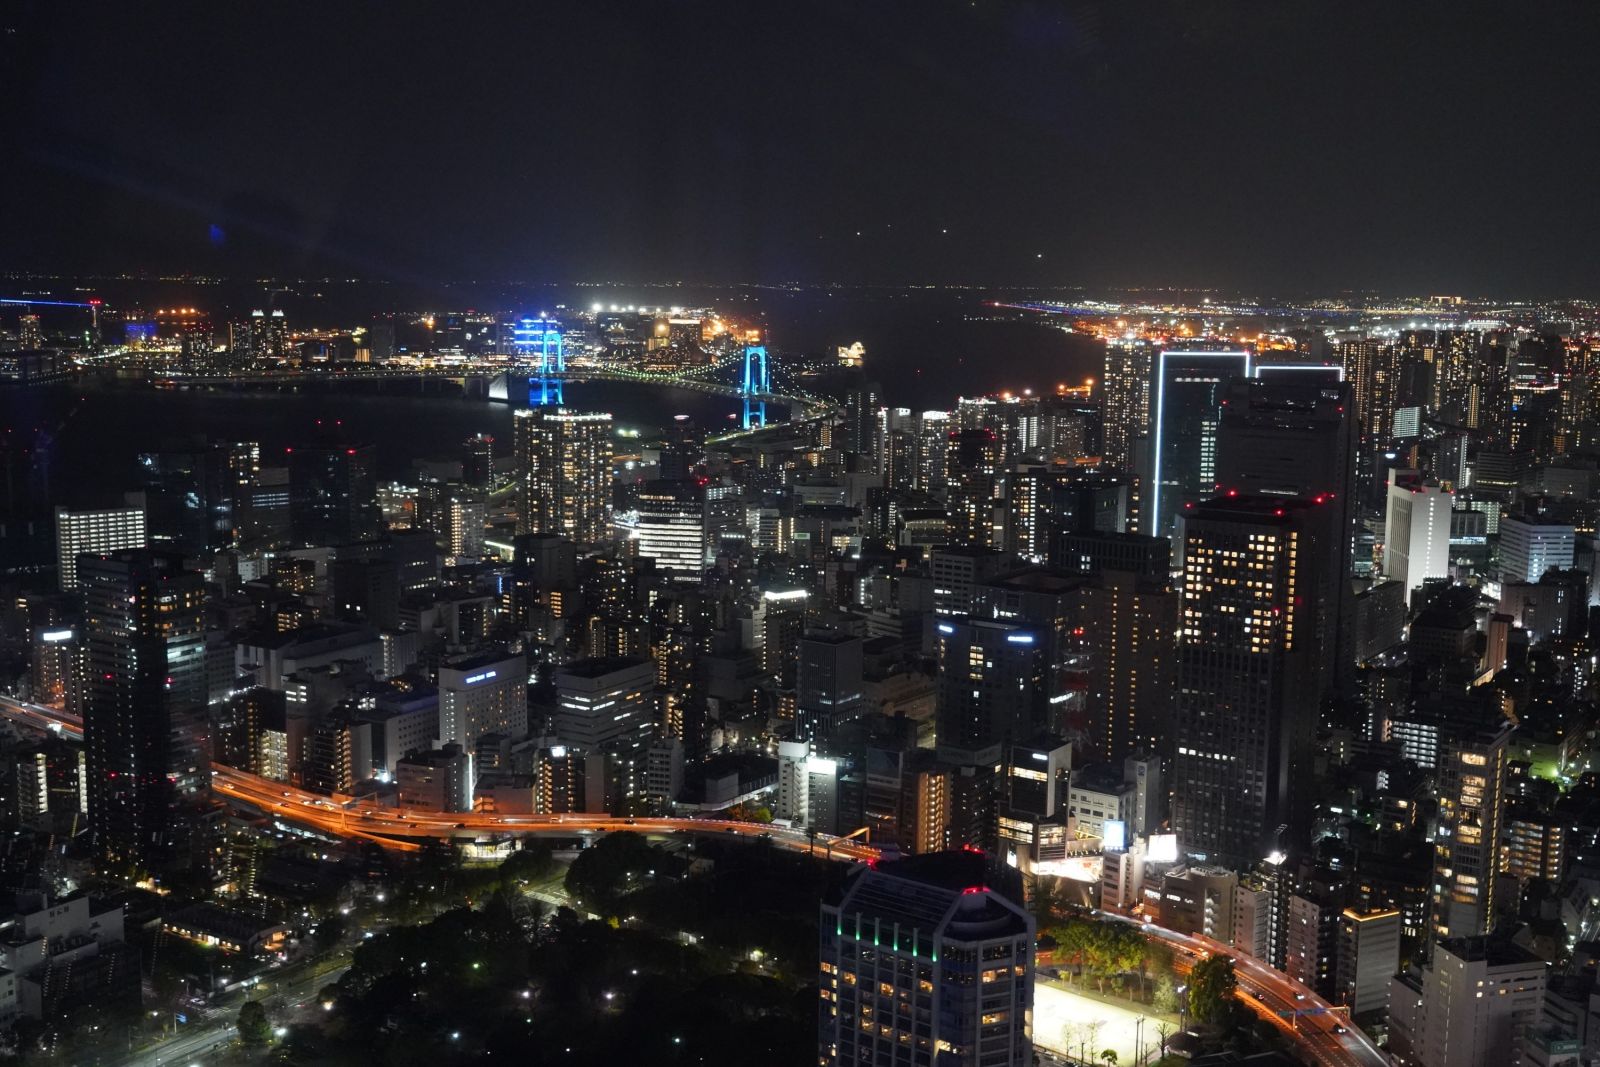 Ein Blick auf die Skyline und die Bucht Tokios bei Nacht vom Tokio Tower